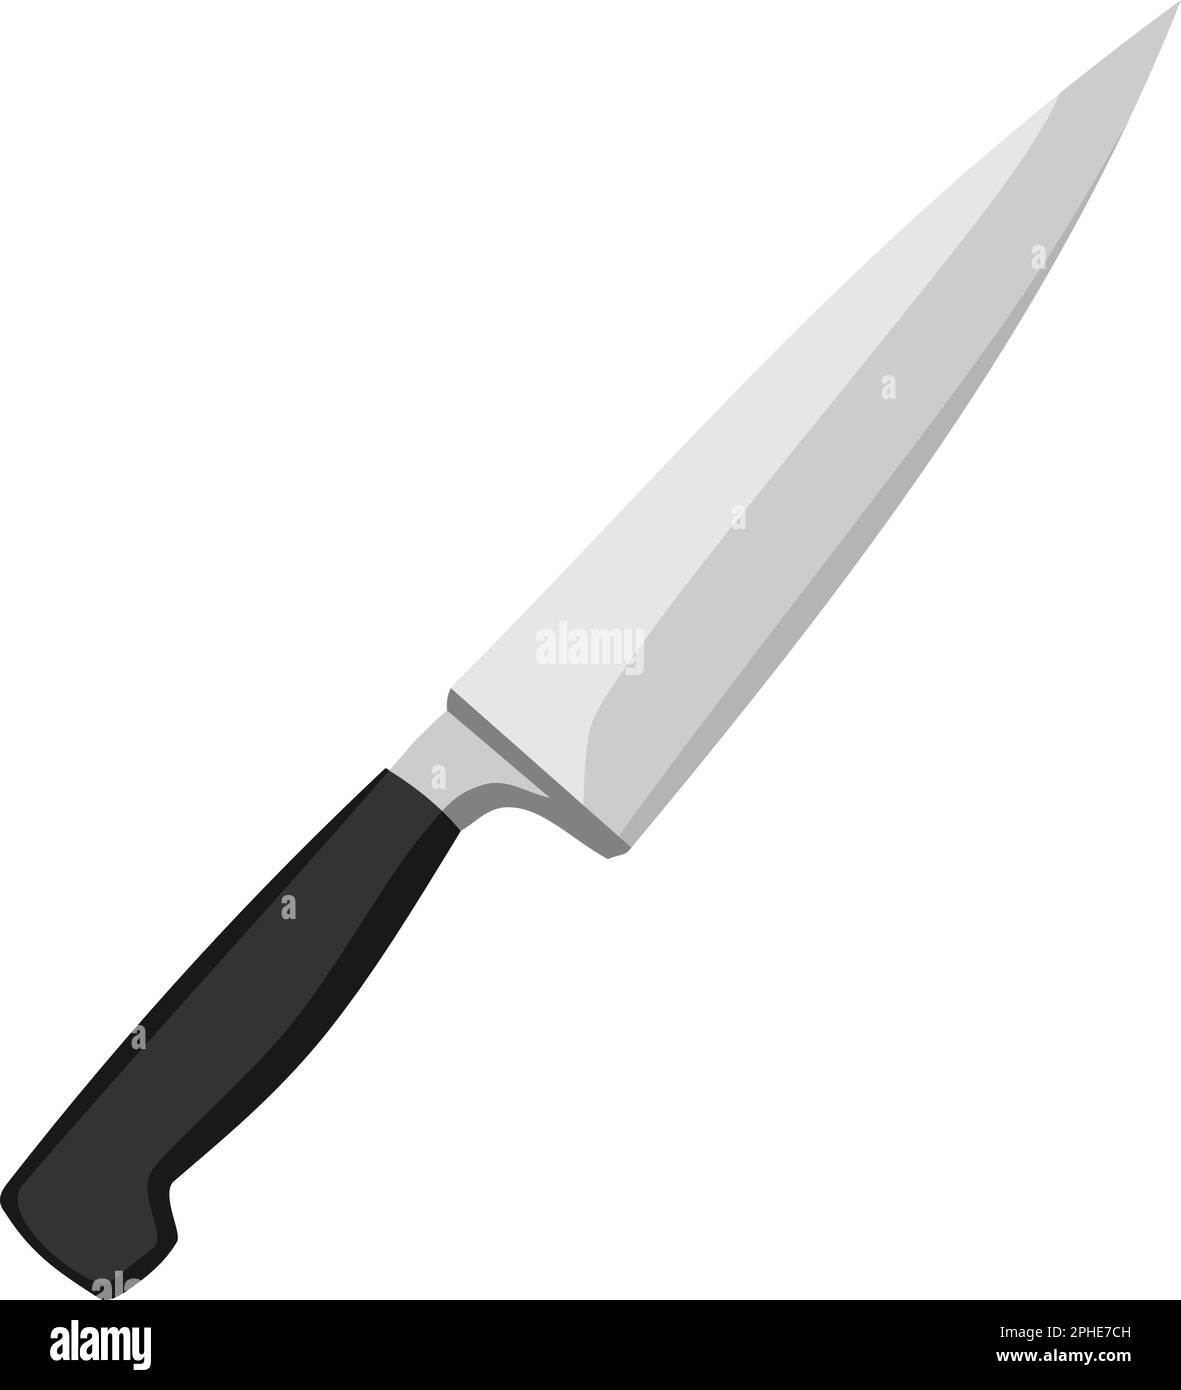 Vettore di taglio a gancio per utensili a coltello Immagine e Vettoriale -  Alamy